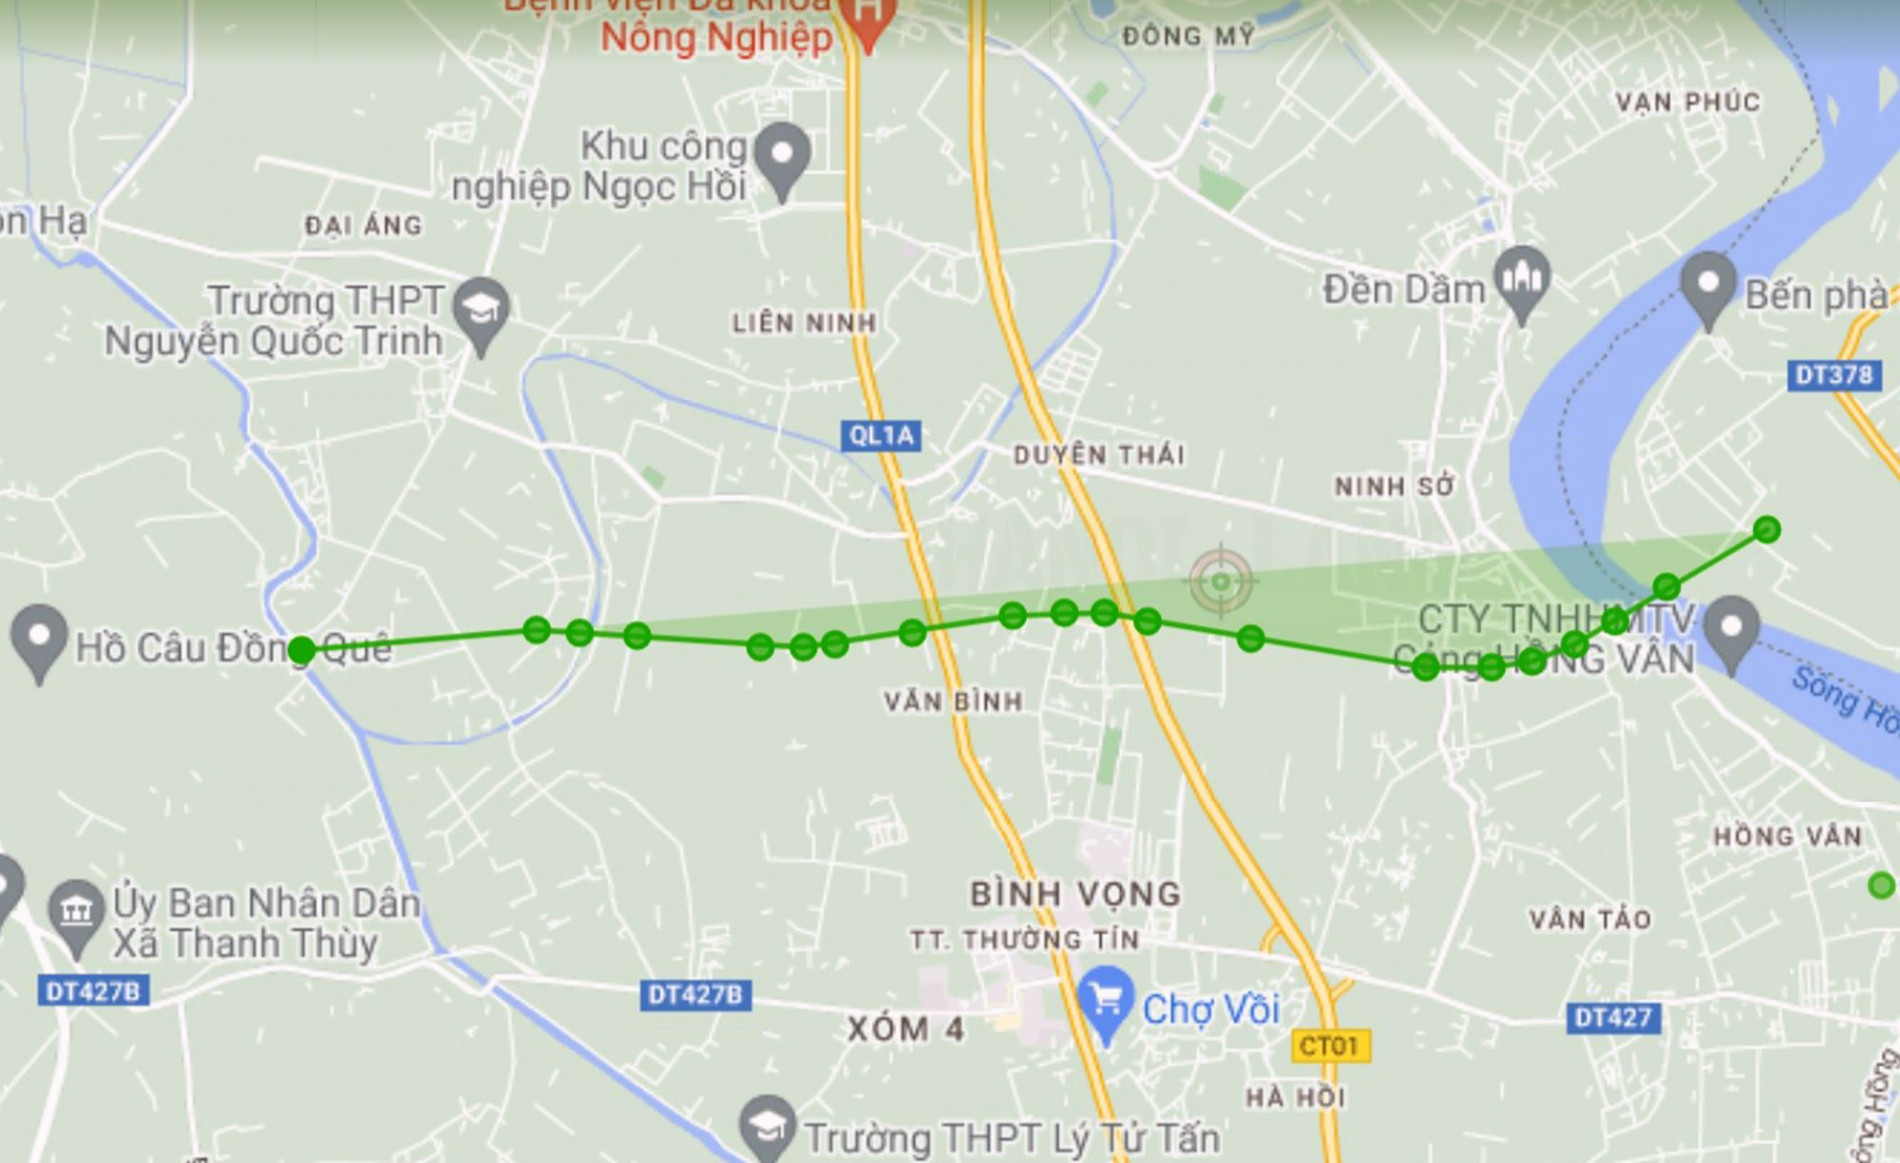 Đường Vành đai 4 sẽ mở theo quy hoạch qua huyện Thường Tín, Hà Nội